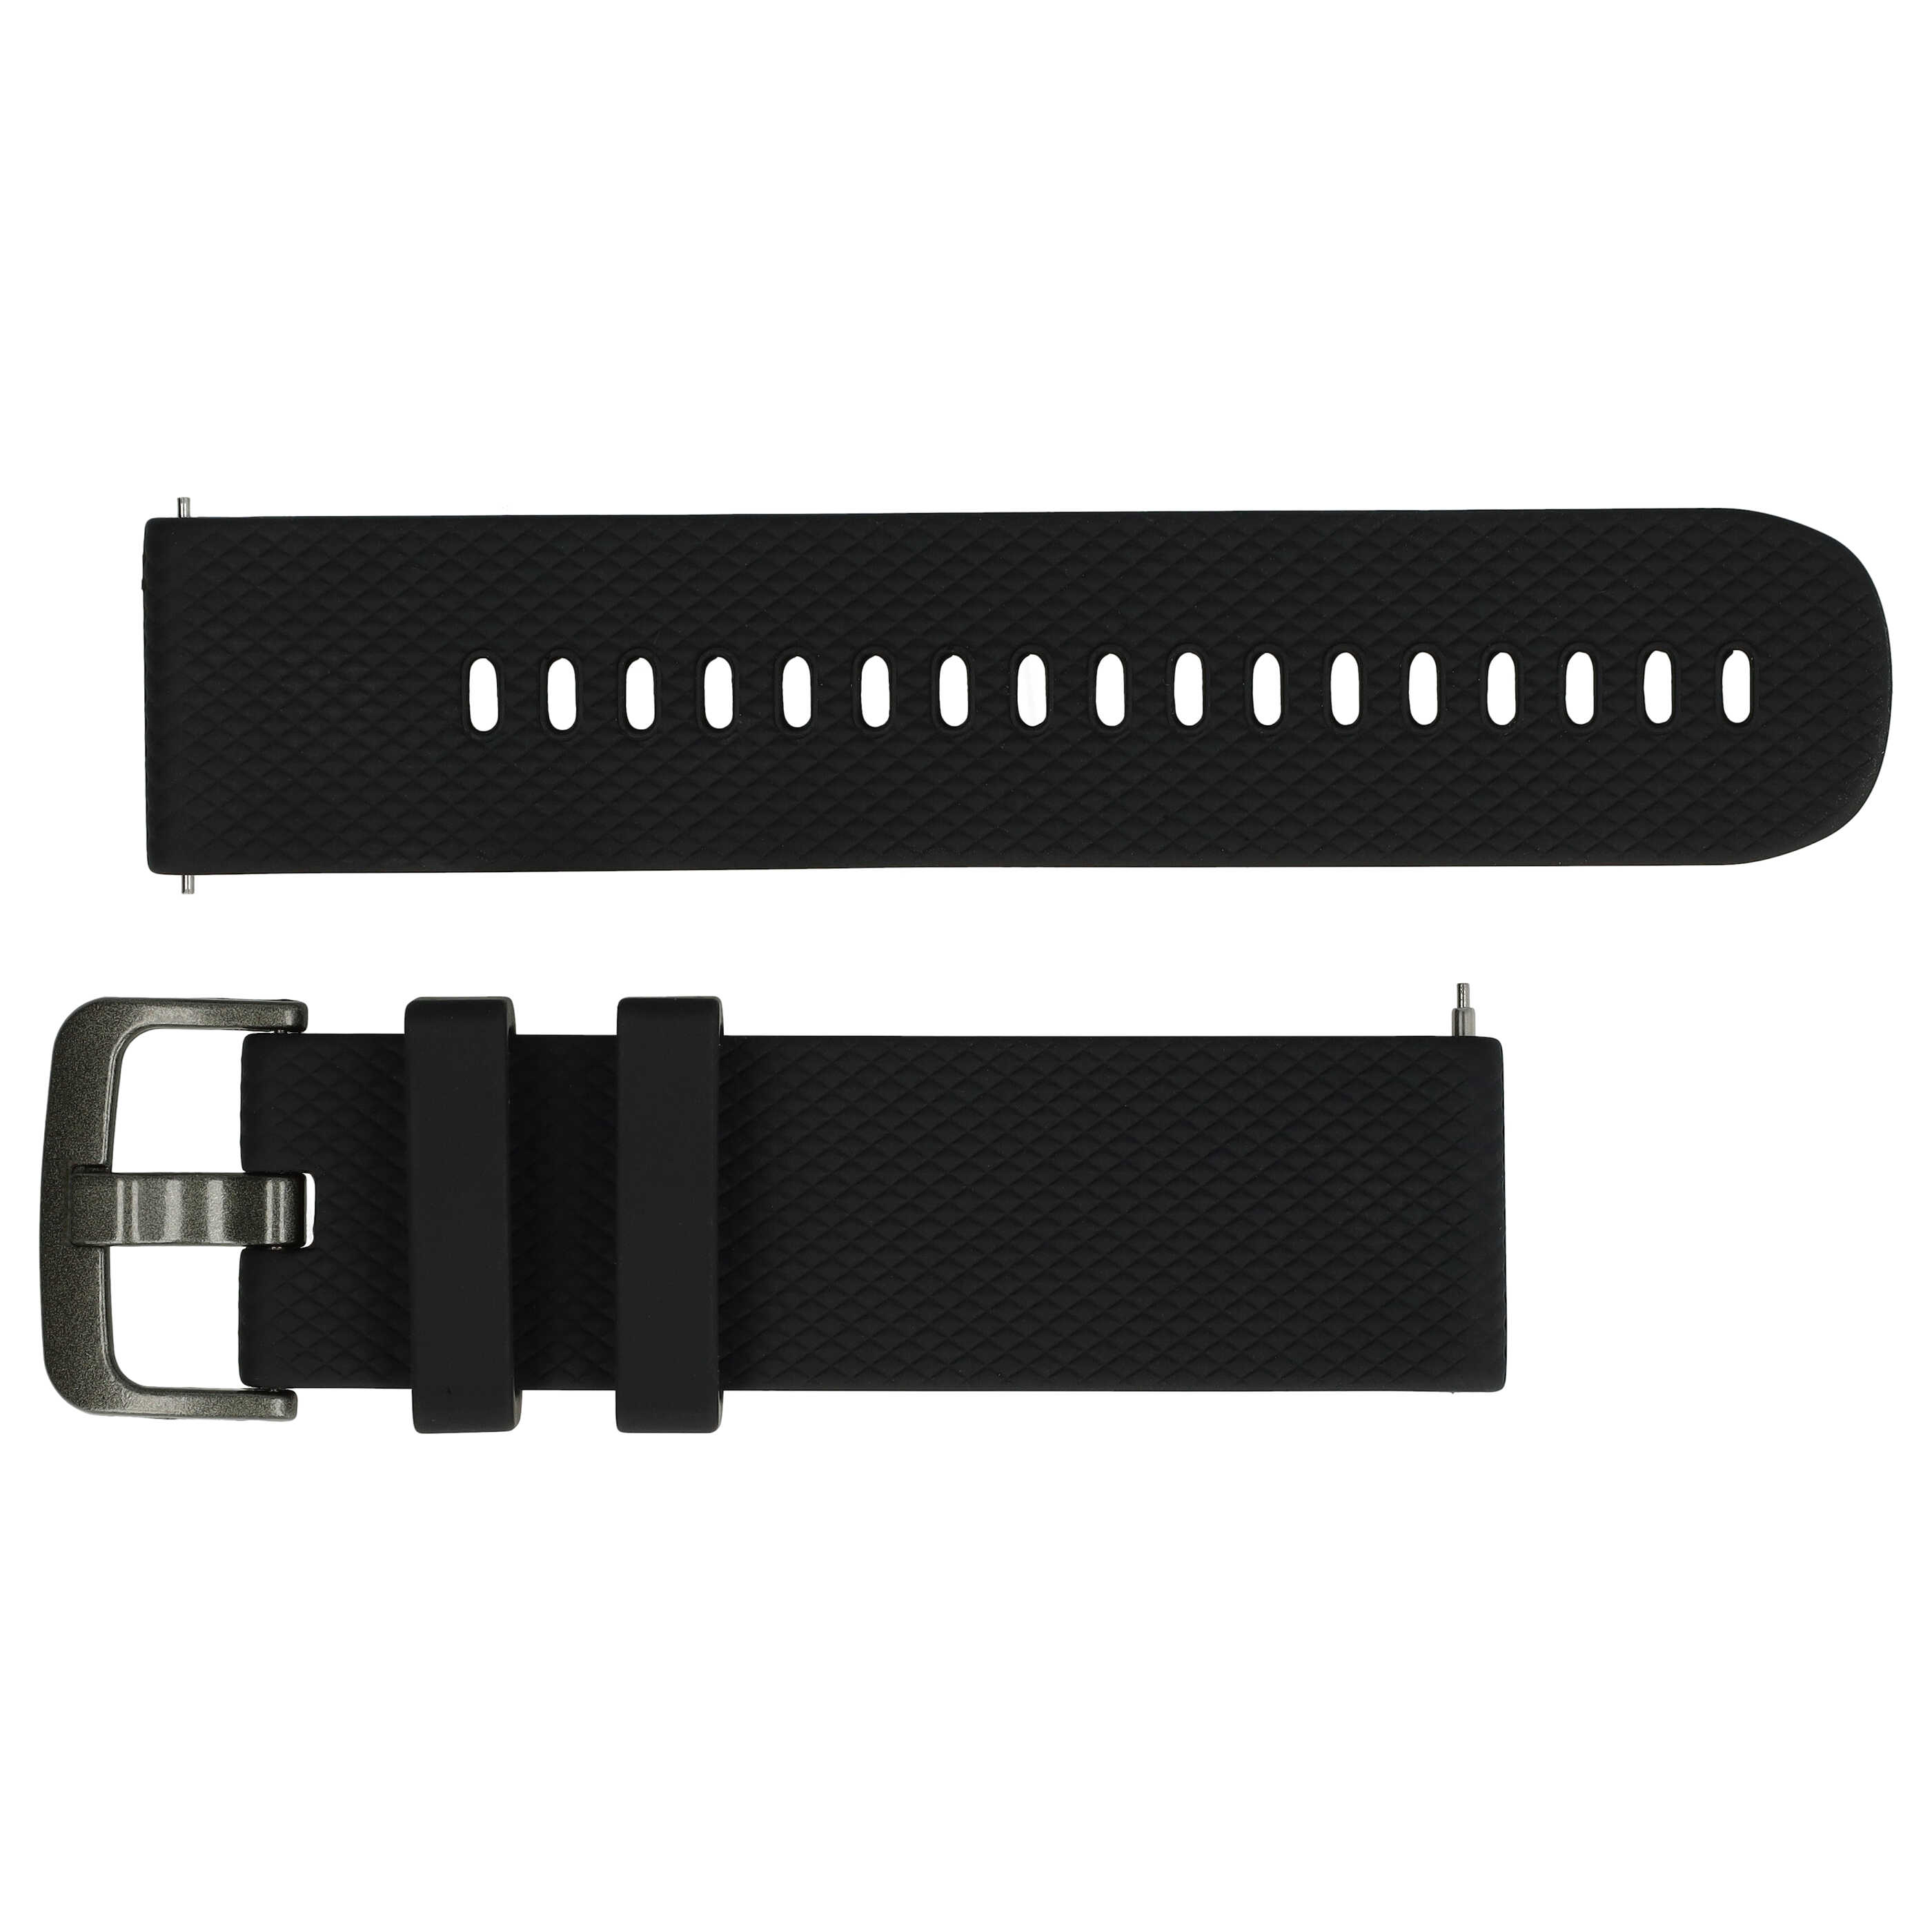 Bracelet S de remplacement pour montre intelligente Samsung Galaxy Watch - tour de montre max 232 mm, silicone